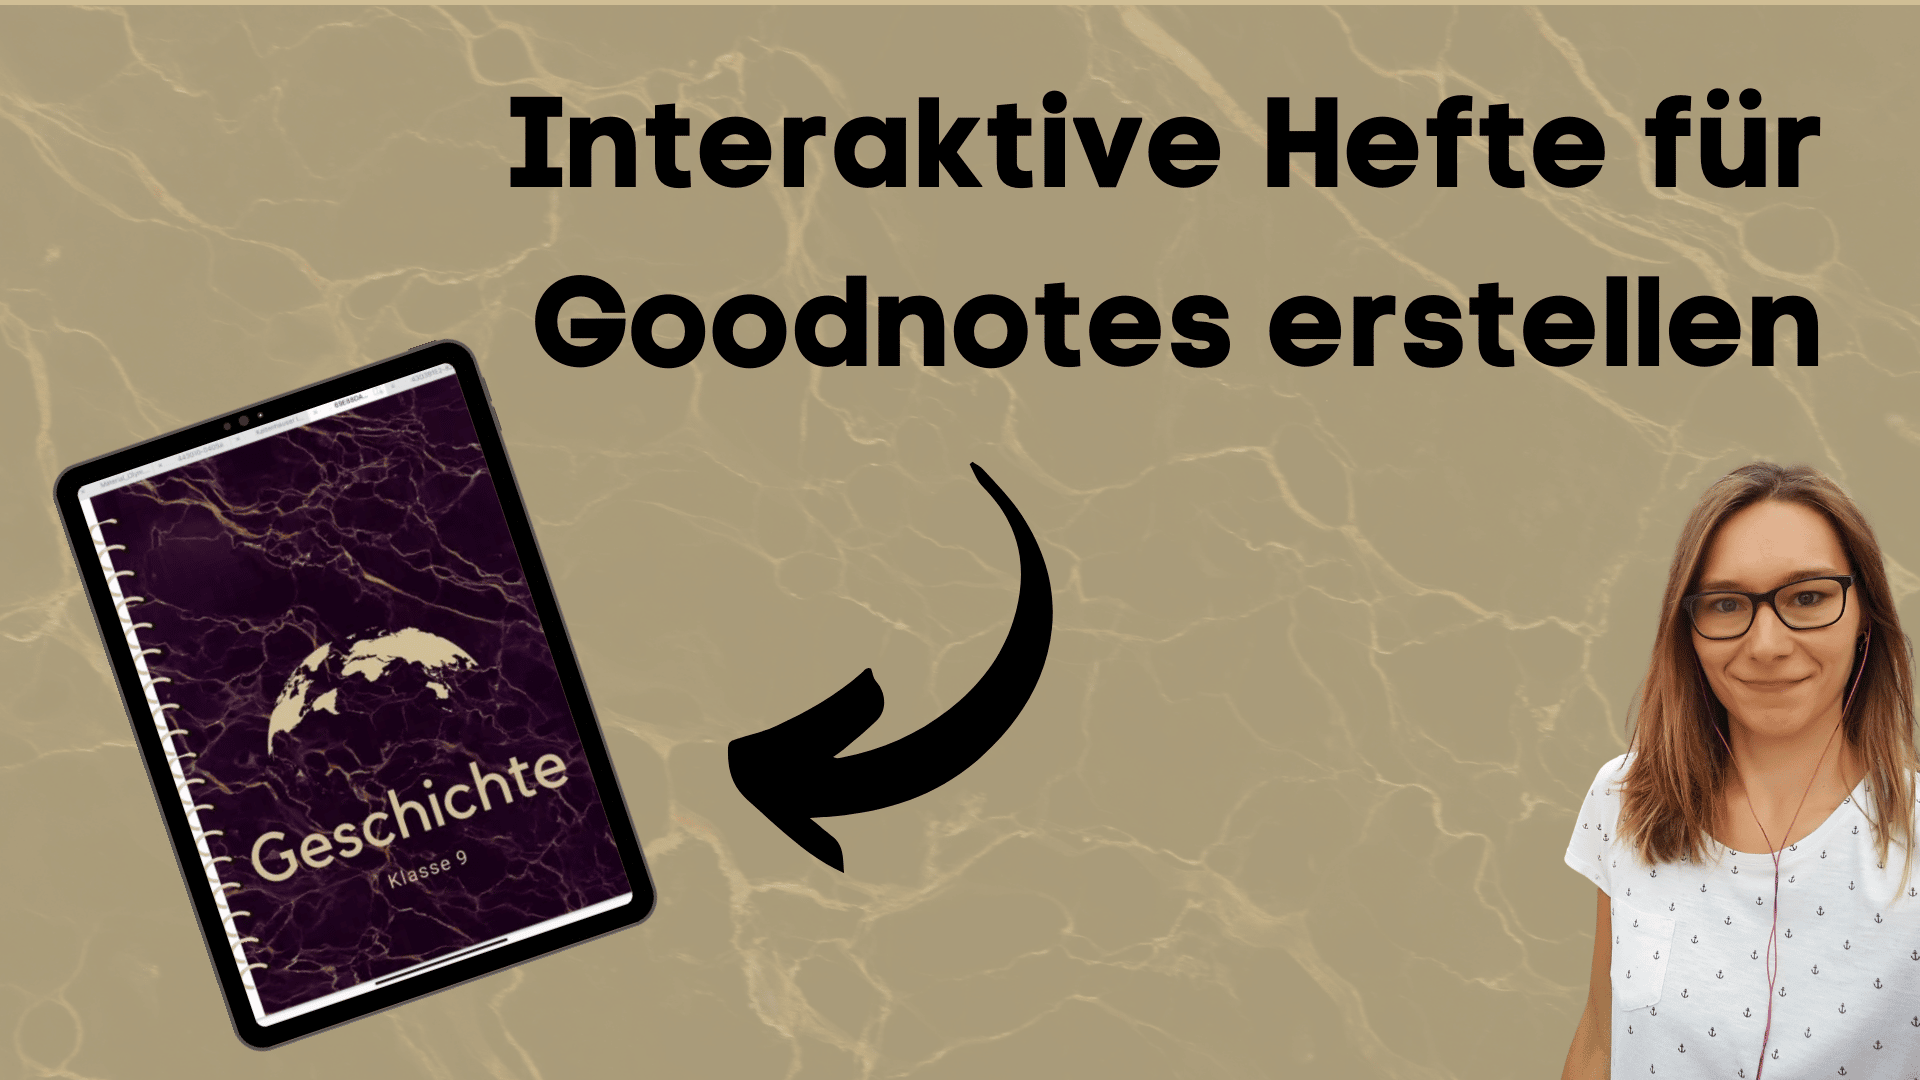 Canva: Interaktive Hefte für Goodnotes erstellen